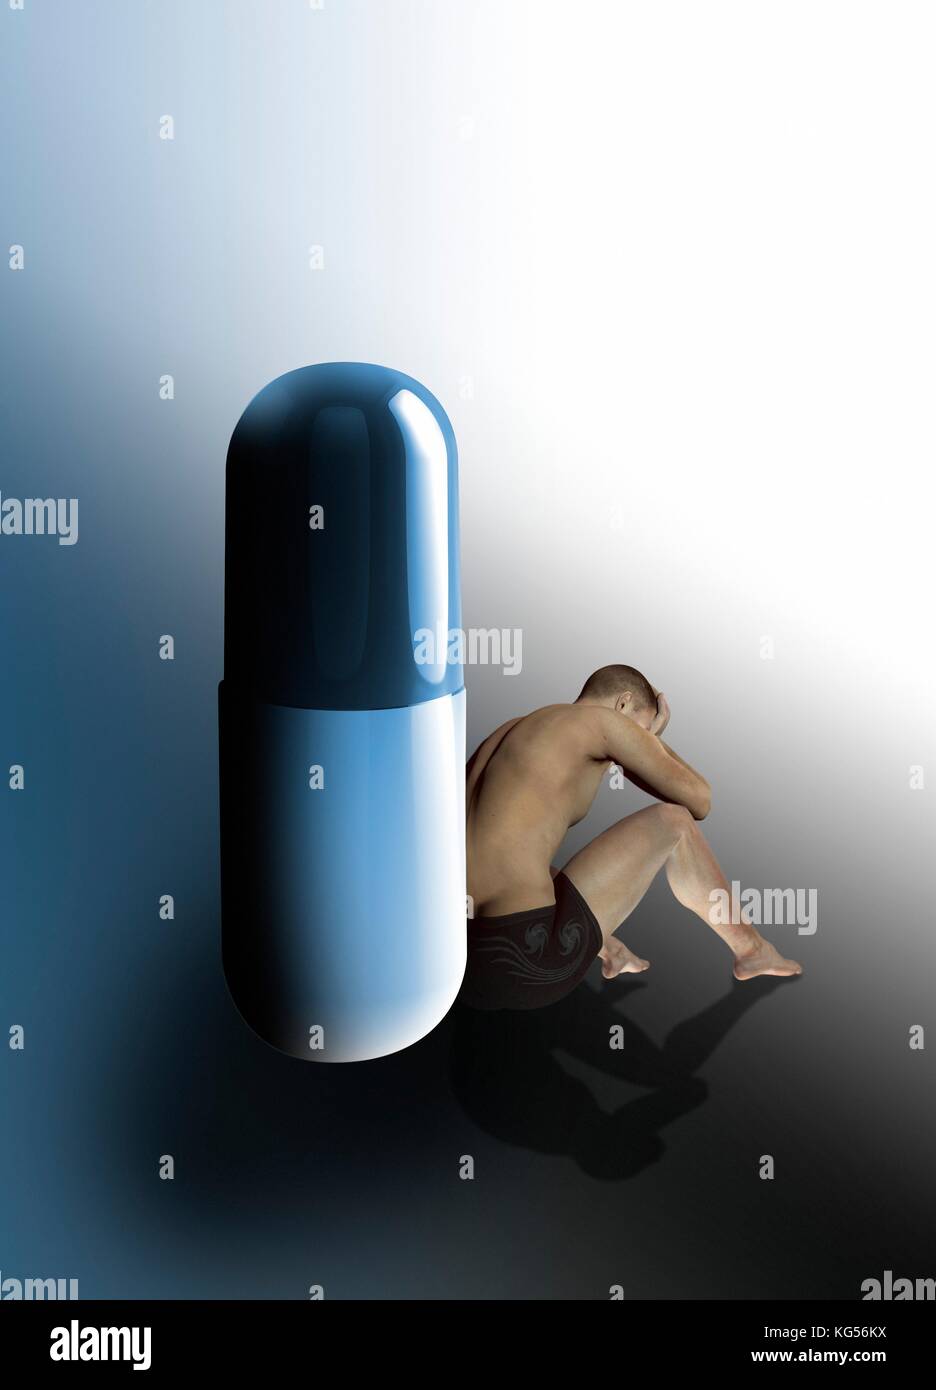 Persona appoggiata contro una pillola, illustrazione. Foto Stock